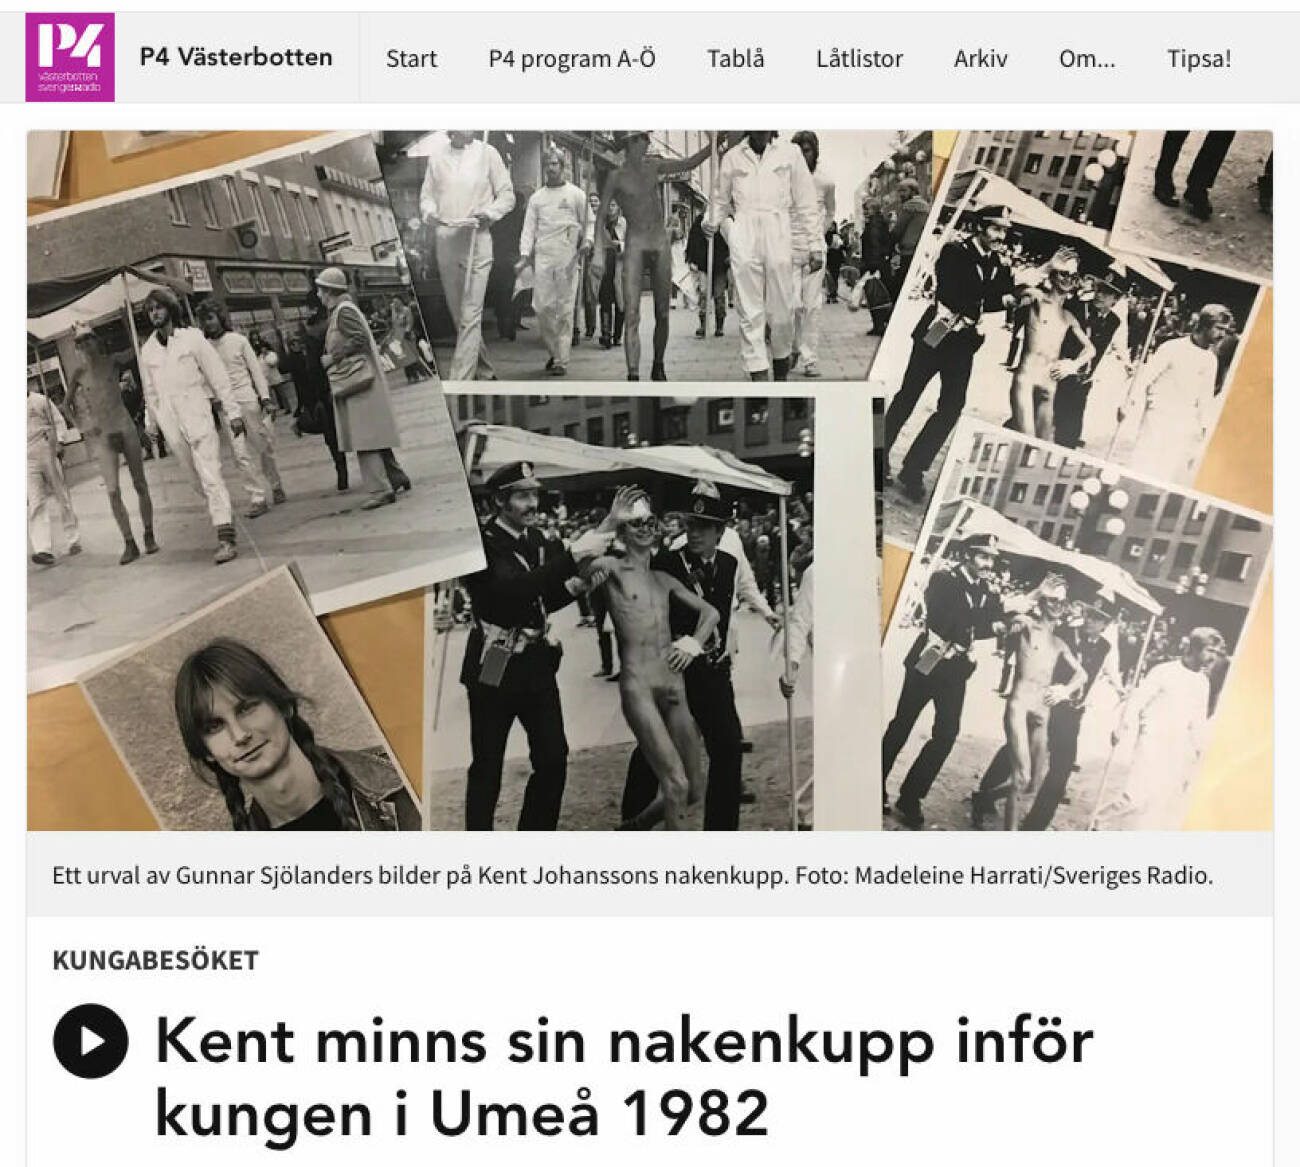 P4 Västerbotten om nakenkuppen mot kungaparet i Umeå 1982